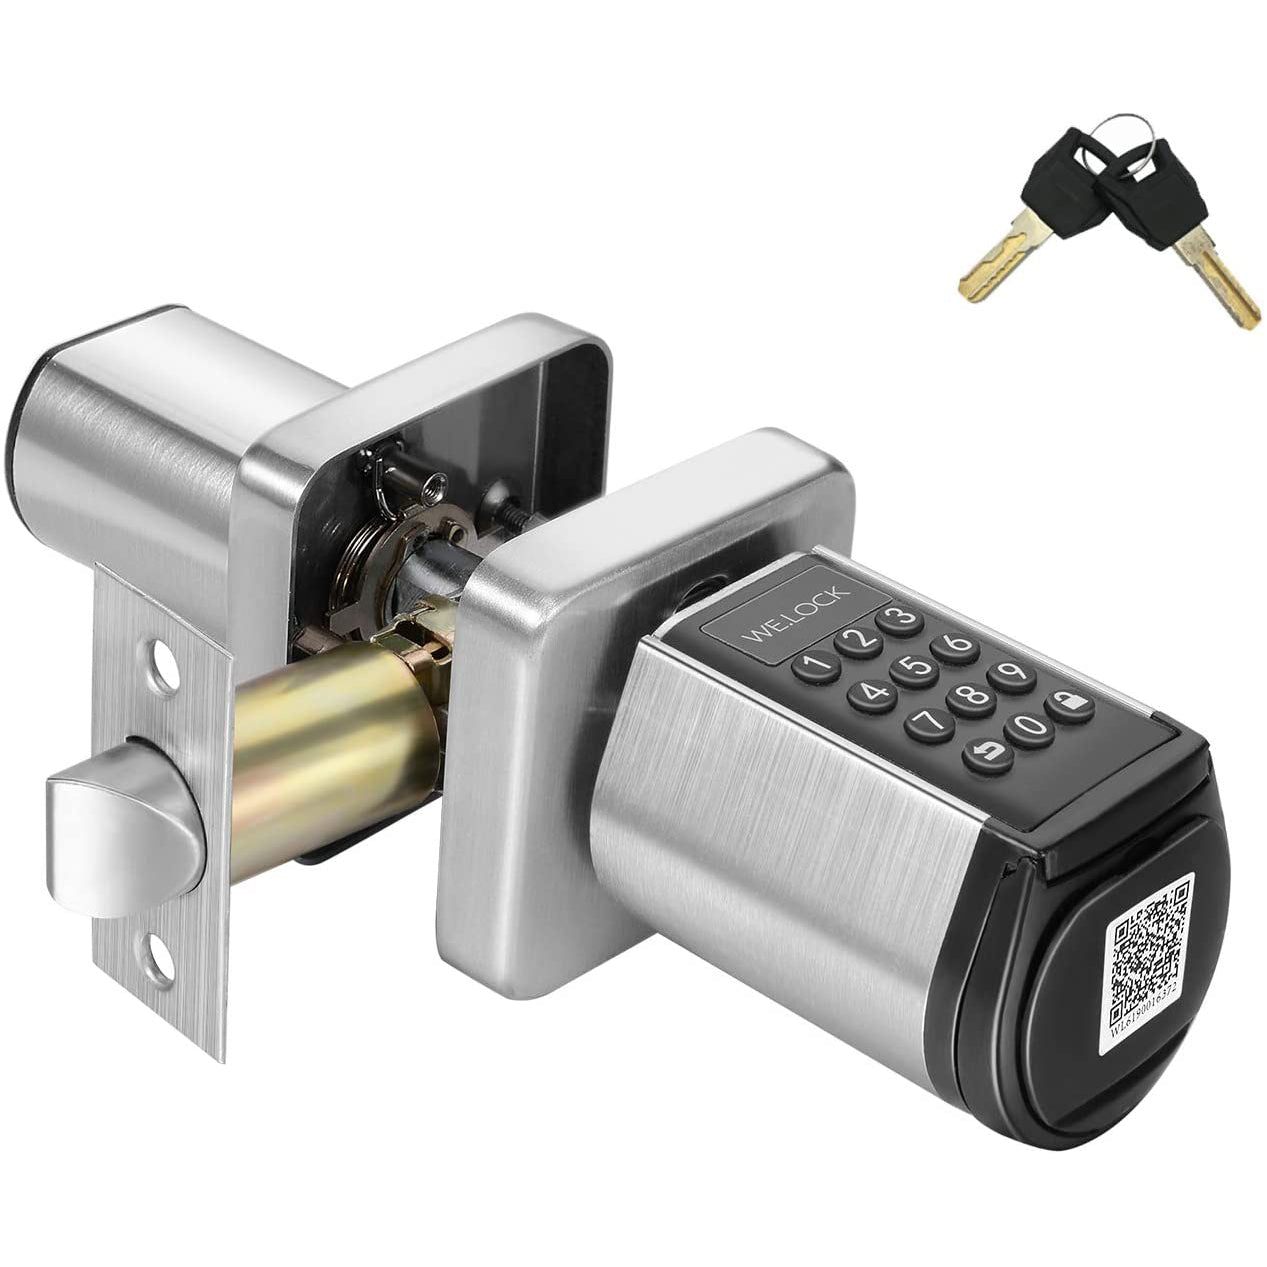 Keyless Entry Door Lock, Digital Keypad Deadbolt Lock- PB000KEY24 US